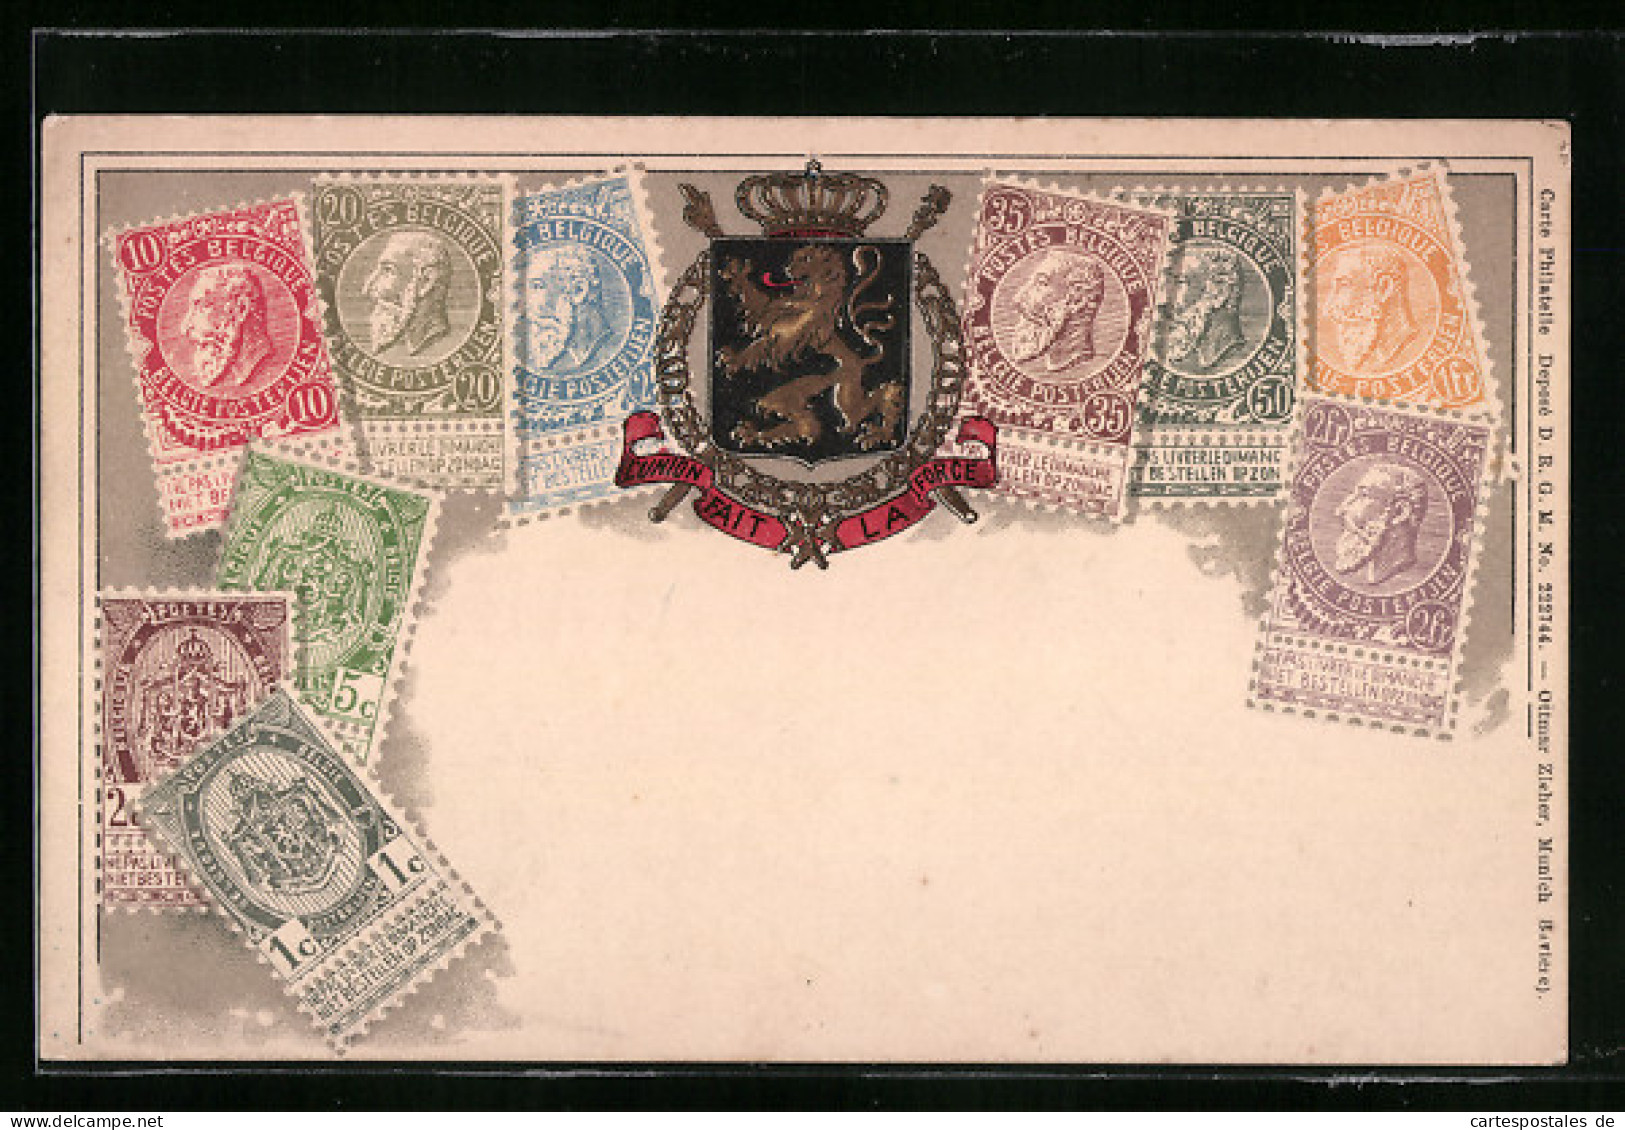 AK Briefmarken Aus Belgien  - Stamps (pictures)